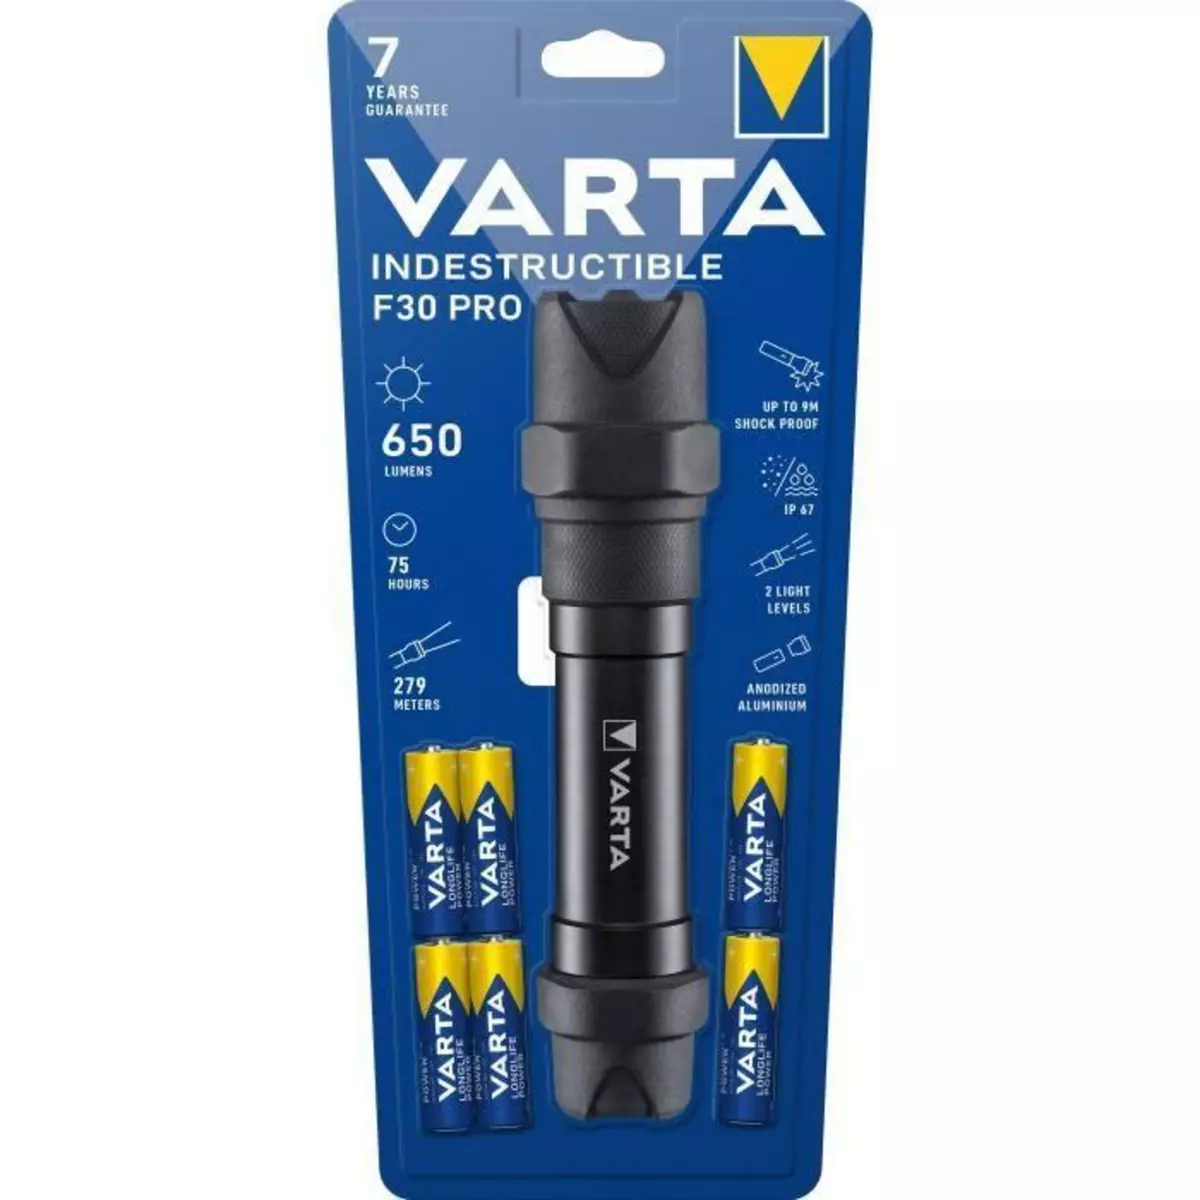  Torche-VARTA-Indestructible F30 Pro-650lm Garantie 7ans-Resistante au chocs (9m) a l'eau et la poussiere-IP67-6 Piles AA incluses